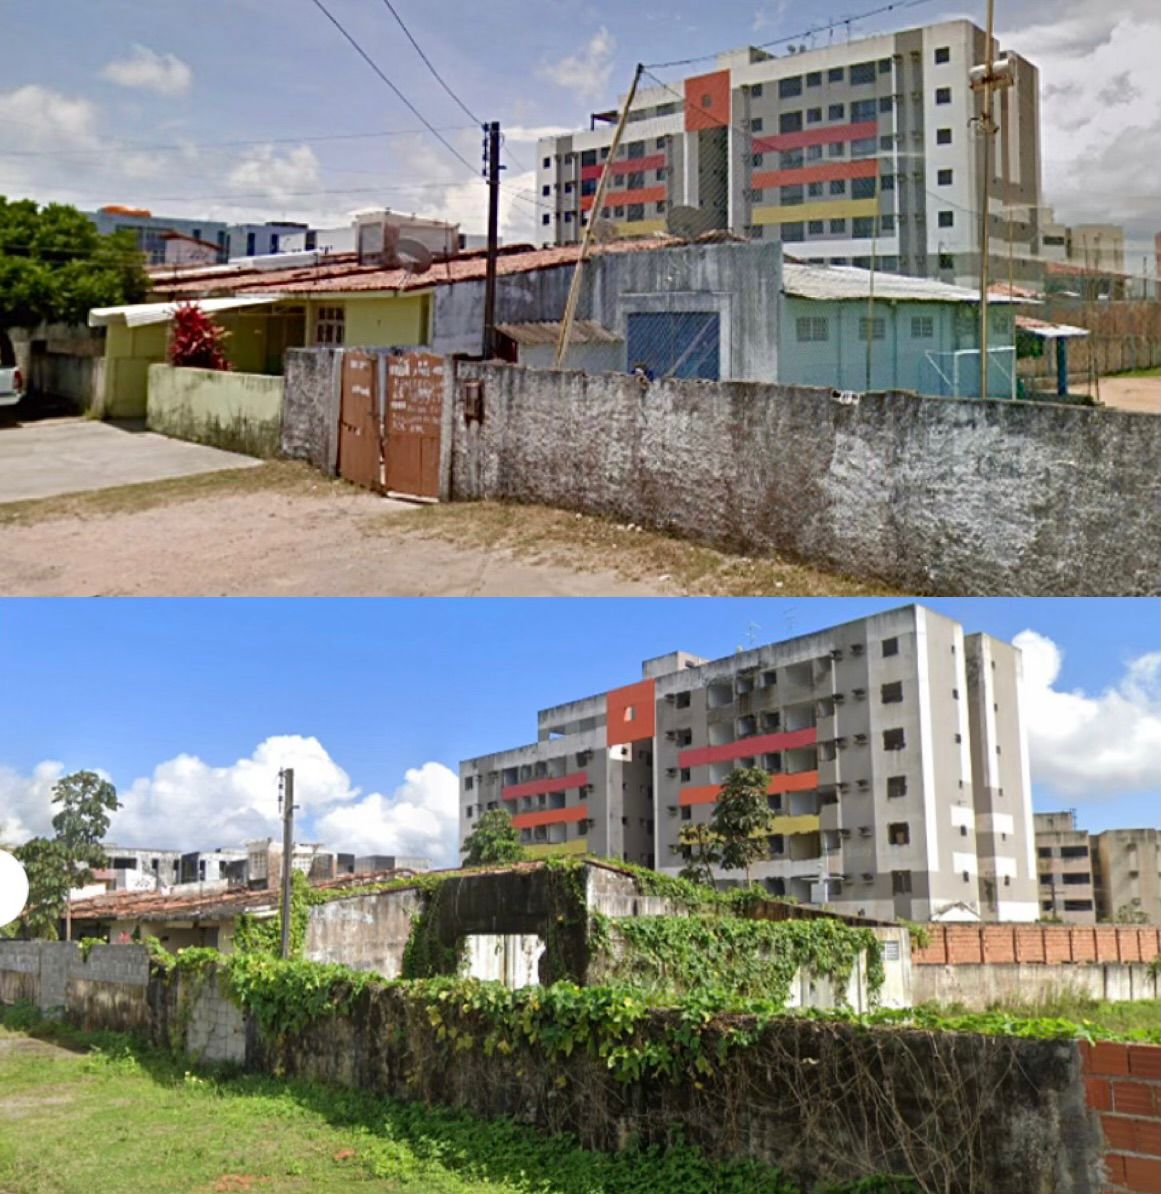 bairros abandonados em Maceió 